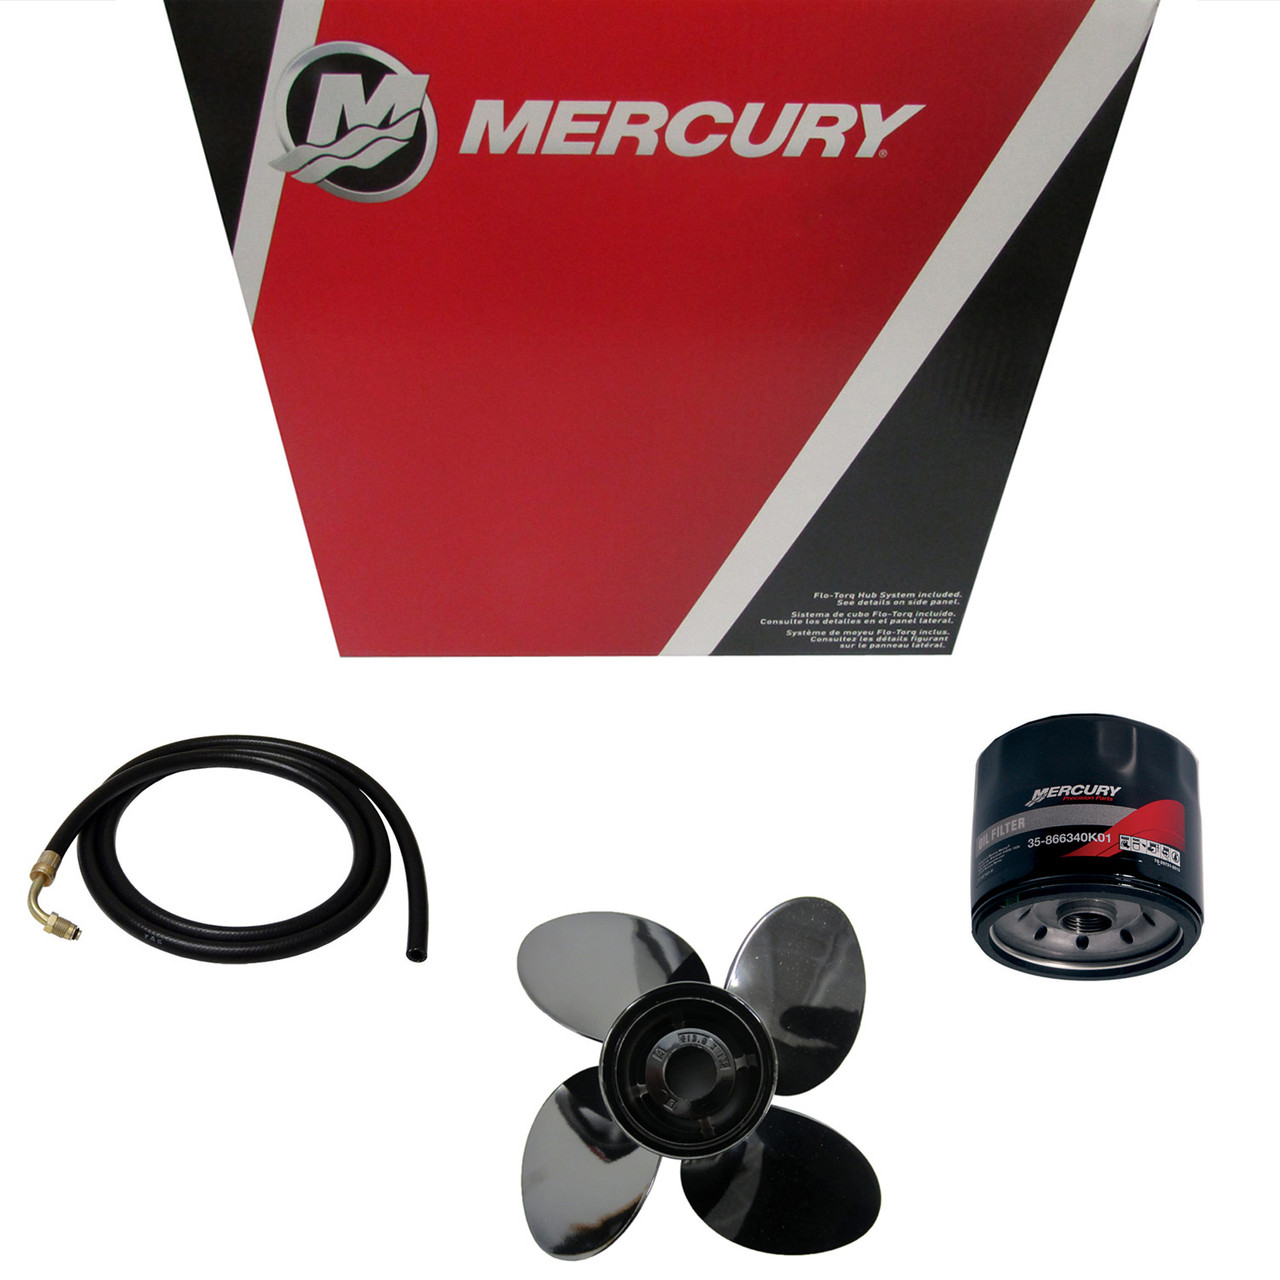 Mercury Marine / Mercruiser New OEM Carburetor, 3319-804708T2